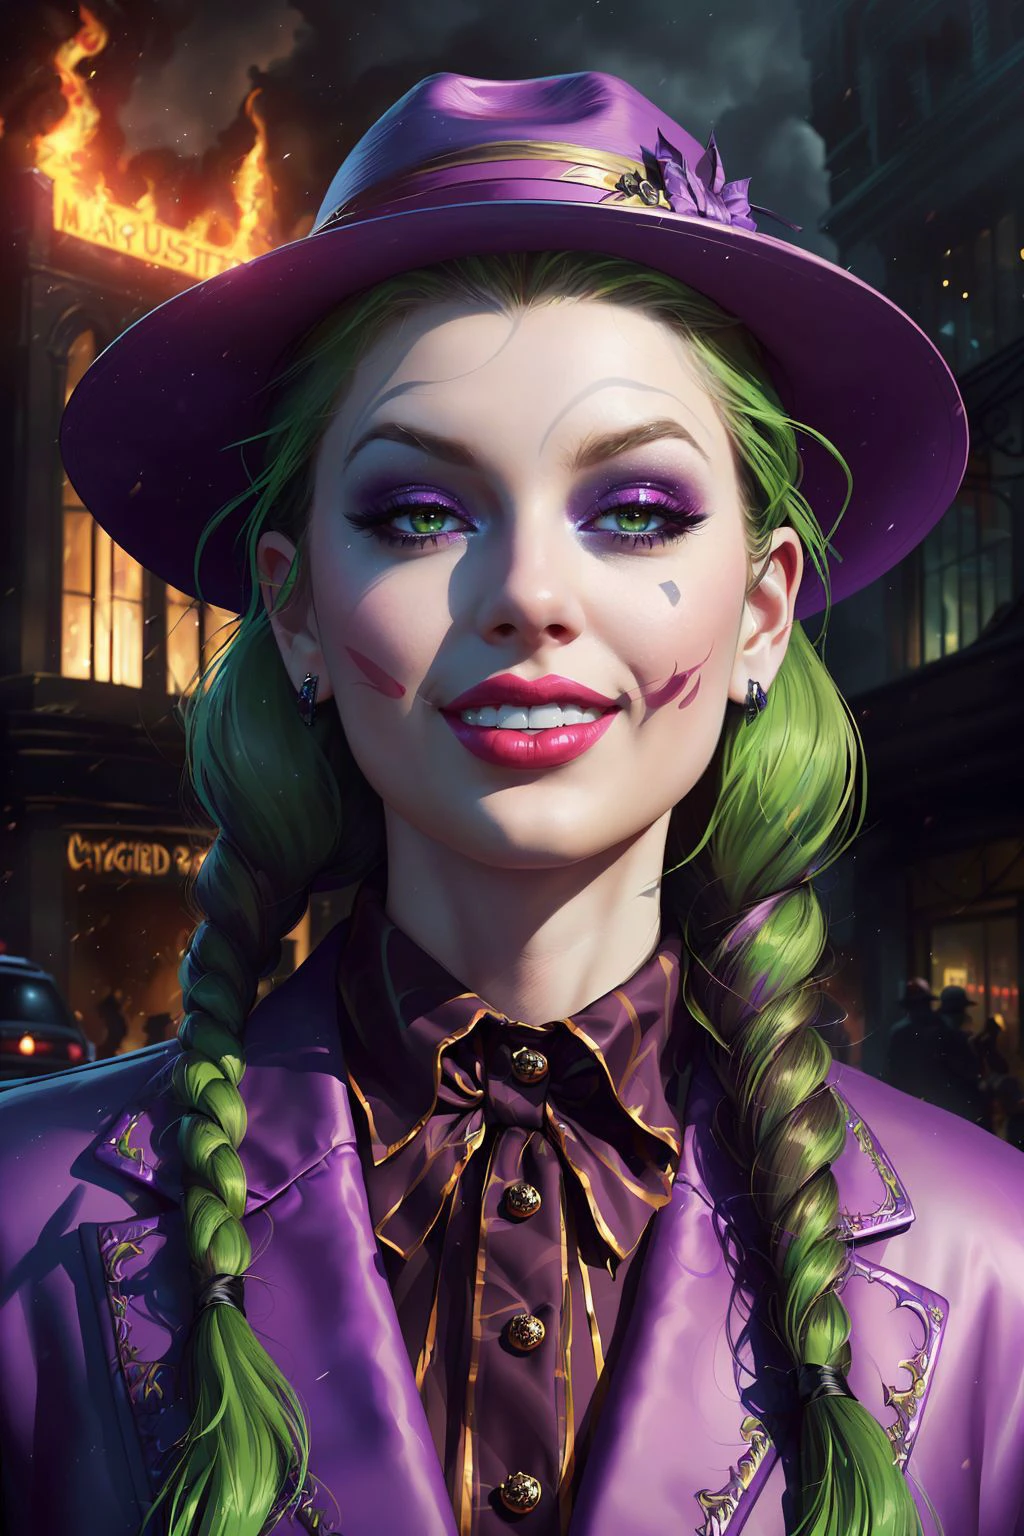 Une superbe peinture numérique de (Taylor Swift:1.0),seulement, (coup du milieu:1.4), Réaliste, chef-d&#39;œuvre, Meilleure qualité, très détaillé, (En tant que Joker féminin, paint a chef-d&#39;œuvre in vibrant 8K quality. Vêtue de son emblématique costume violet avec un chapeau à larges bords assorti, on la voit dans les rues chaotiques de Gotham, un sourire menaçant s&#39;étala sur son visage. Ses cheveux verts entourent son visage tandis que la ville brûle derrière elle., capturant son amour pour le chaos dans cette pièce visuellement époustouflante.:1.3),(à la manière de Mike Mignola:1.1),Art de personnages fantastiques épiques, art conceptuel, art fantastique,  art fantastique, contraste élevé et dynamique,tendance sur artstation, Éclairage dramatique, Occlusion ambiante, éclairage volumétrique, Émotionnel, Art déviant, illustration hyper détaillée, 8k, éclairage magnifique, vamptech ,(portrait pleine hauteur:1.8),(Nattes tressées avec des rubans noirs: Long, des nattes épaisses soigneusement tressées et attachées au bout avec des rubans noirs, encadrer le visage et souligner l&#39;innocence.:1.2),Séance photo